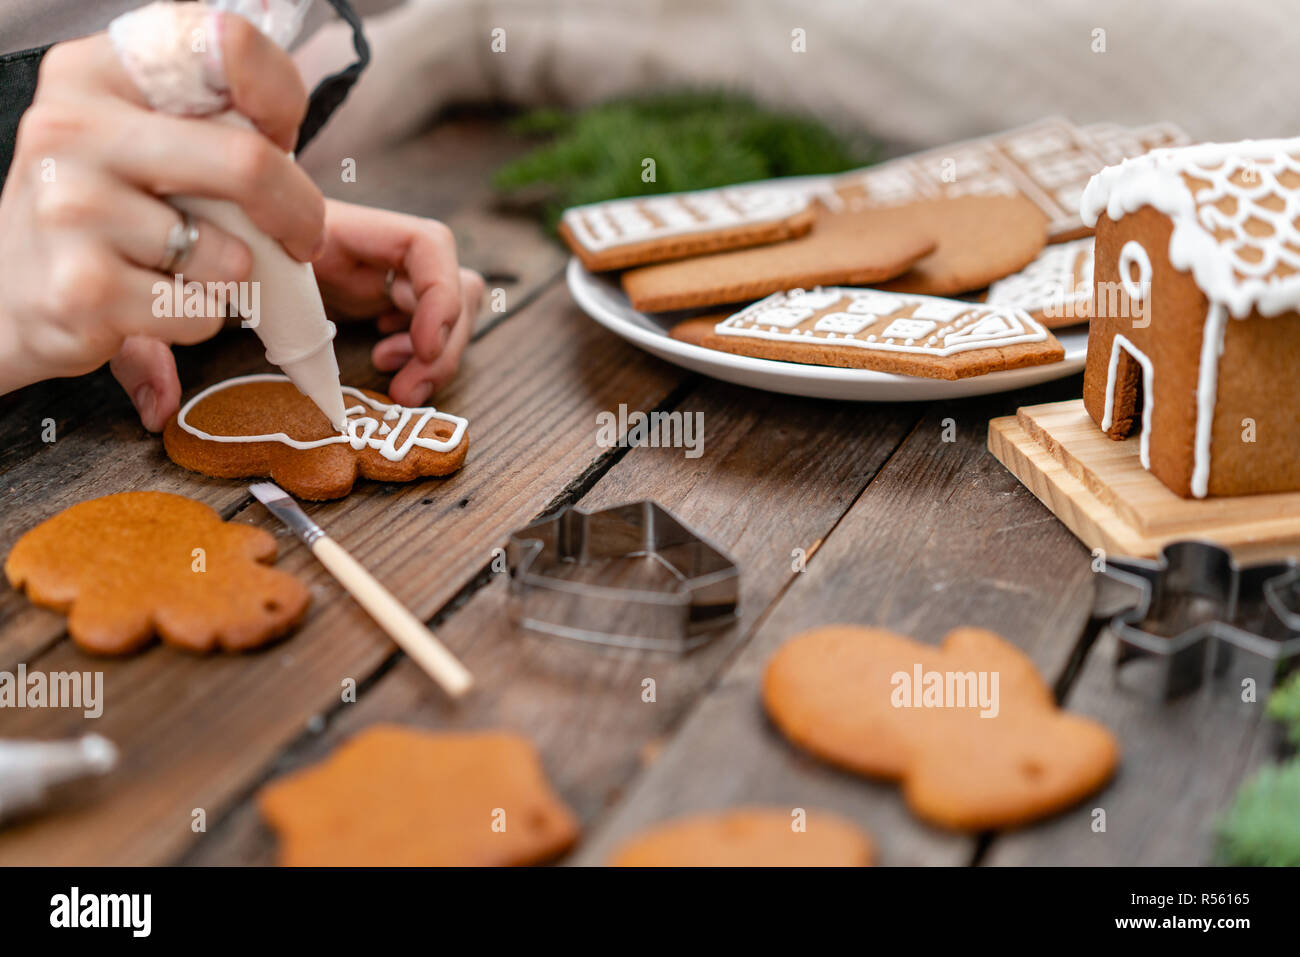 Une jeune fille décore ginger cookies sous la forme d'hiver Noël Bonhomme de matin. Cerise sur le miel attire femme gingerbread cookies. Table marron en bois. copier l'espace. Banque D'Images